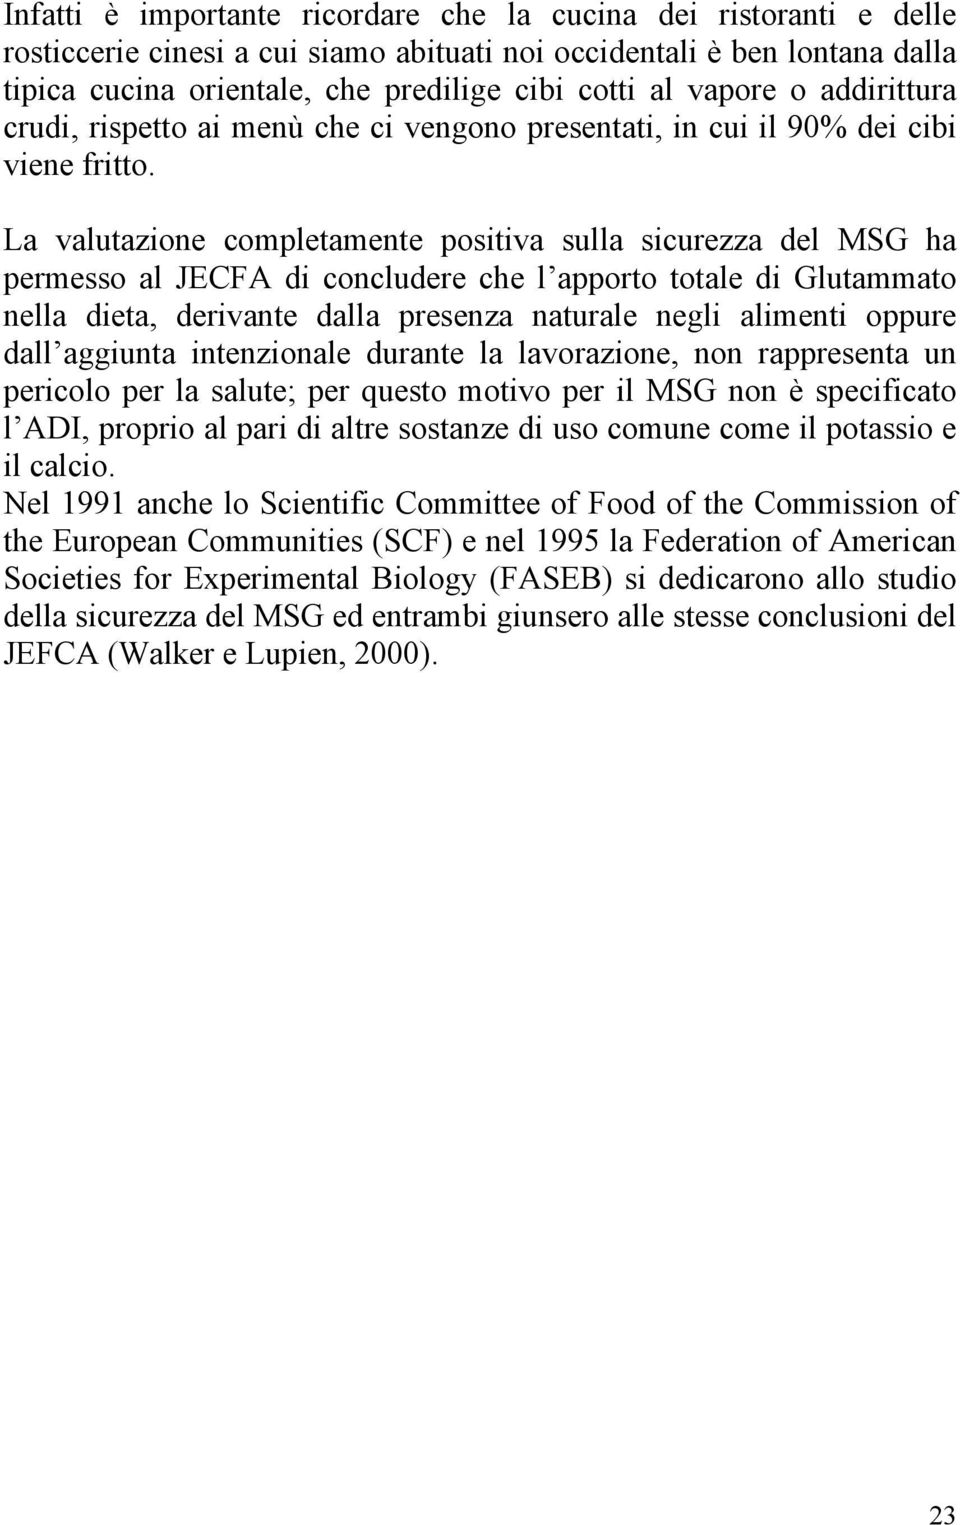 La valutazione completamente positiva sulla sicurezza del MSG ha permesso al JECFA di concludere che l apporto totale di Glutammato nella dieta, derivante dalla presenza naturale negli alimenti